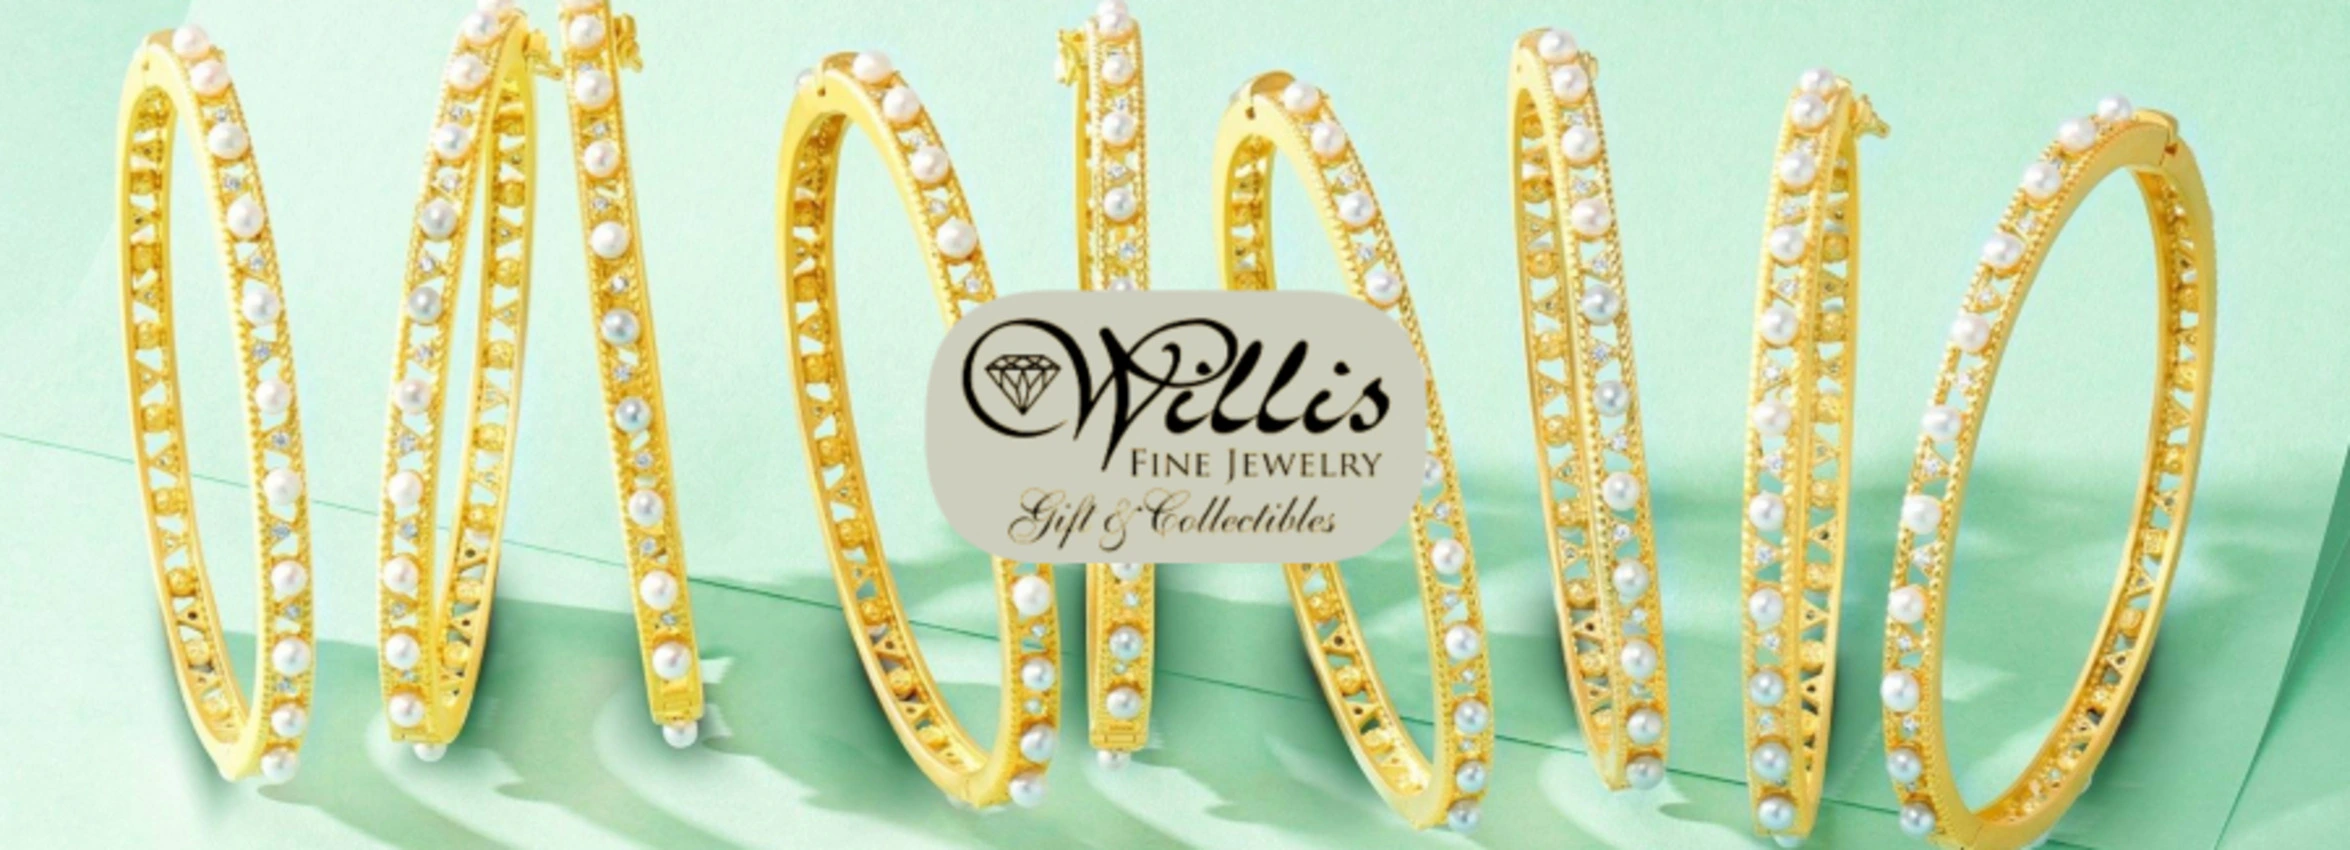 Wells-Fine-Jewelry_Desktop_ET